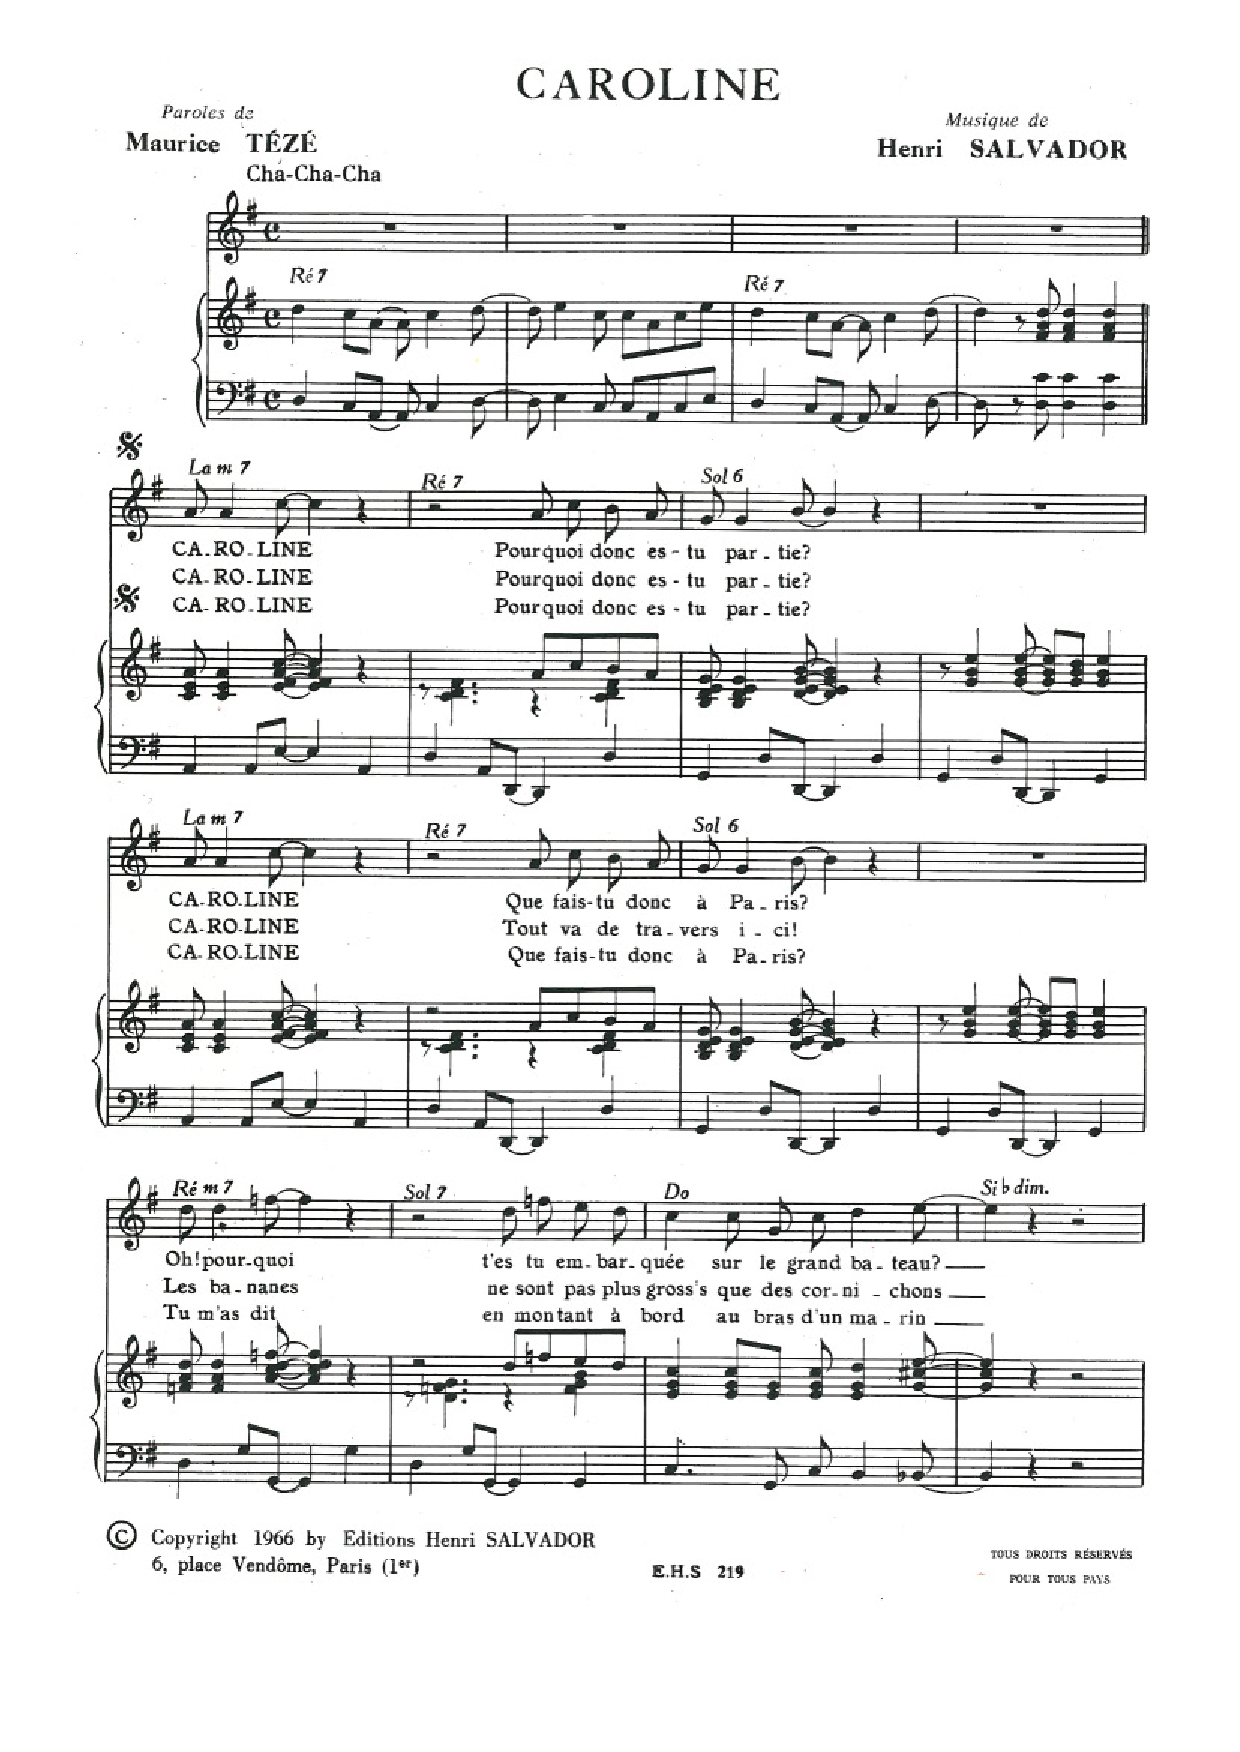 Henri Salvador Caroline sheet music notes and chords arranged for Piano & Vocal